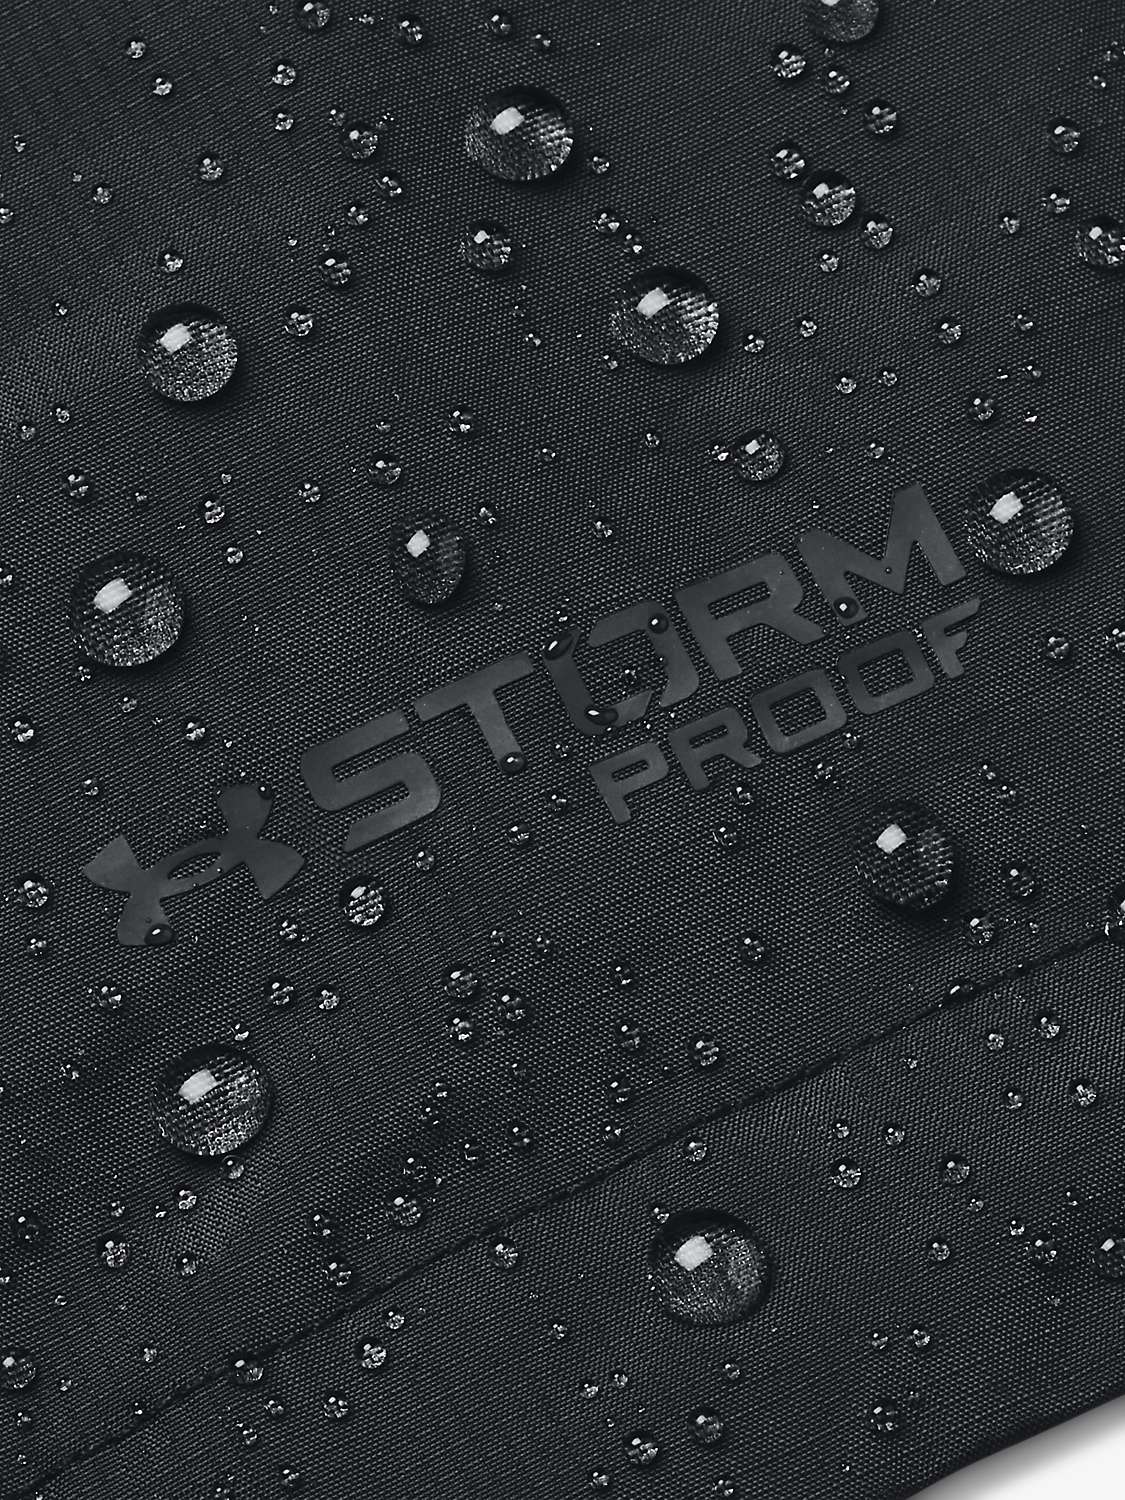 Buy Under Armour Stormproof Cloudstrike 2.0 Women's Waterproof Running Jacket Online at johnlewis.com